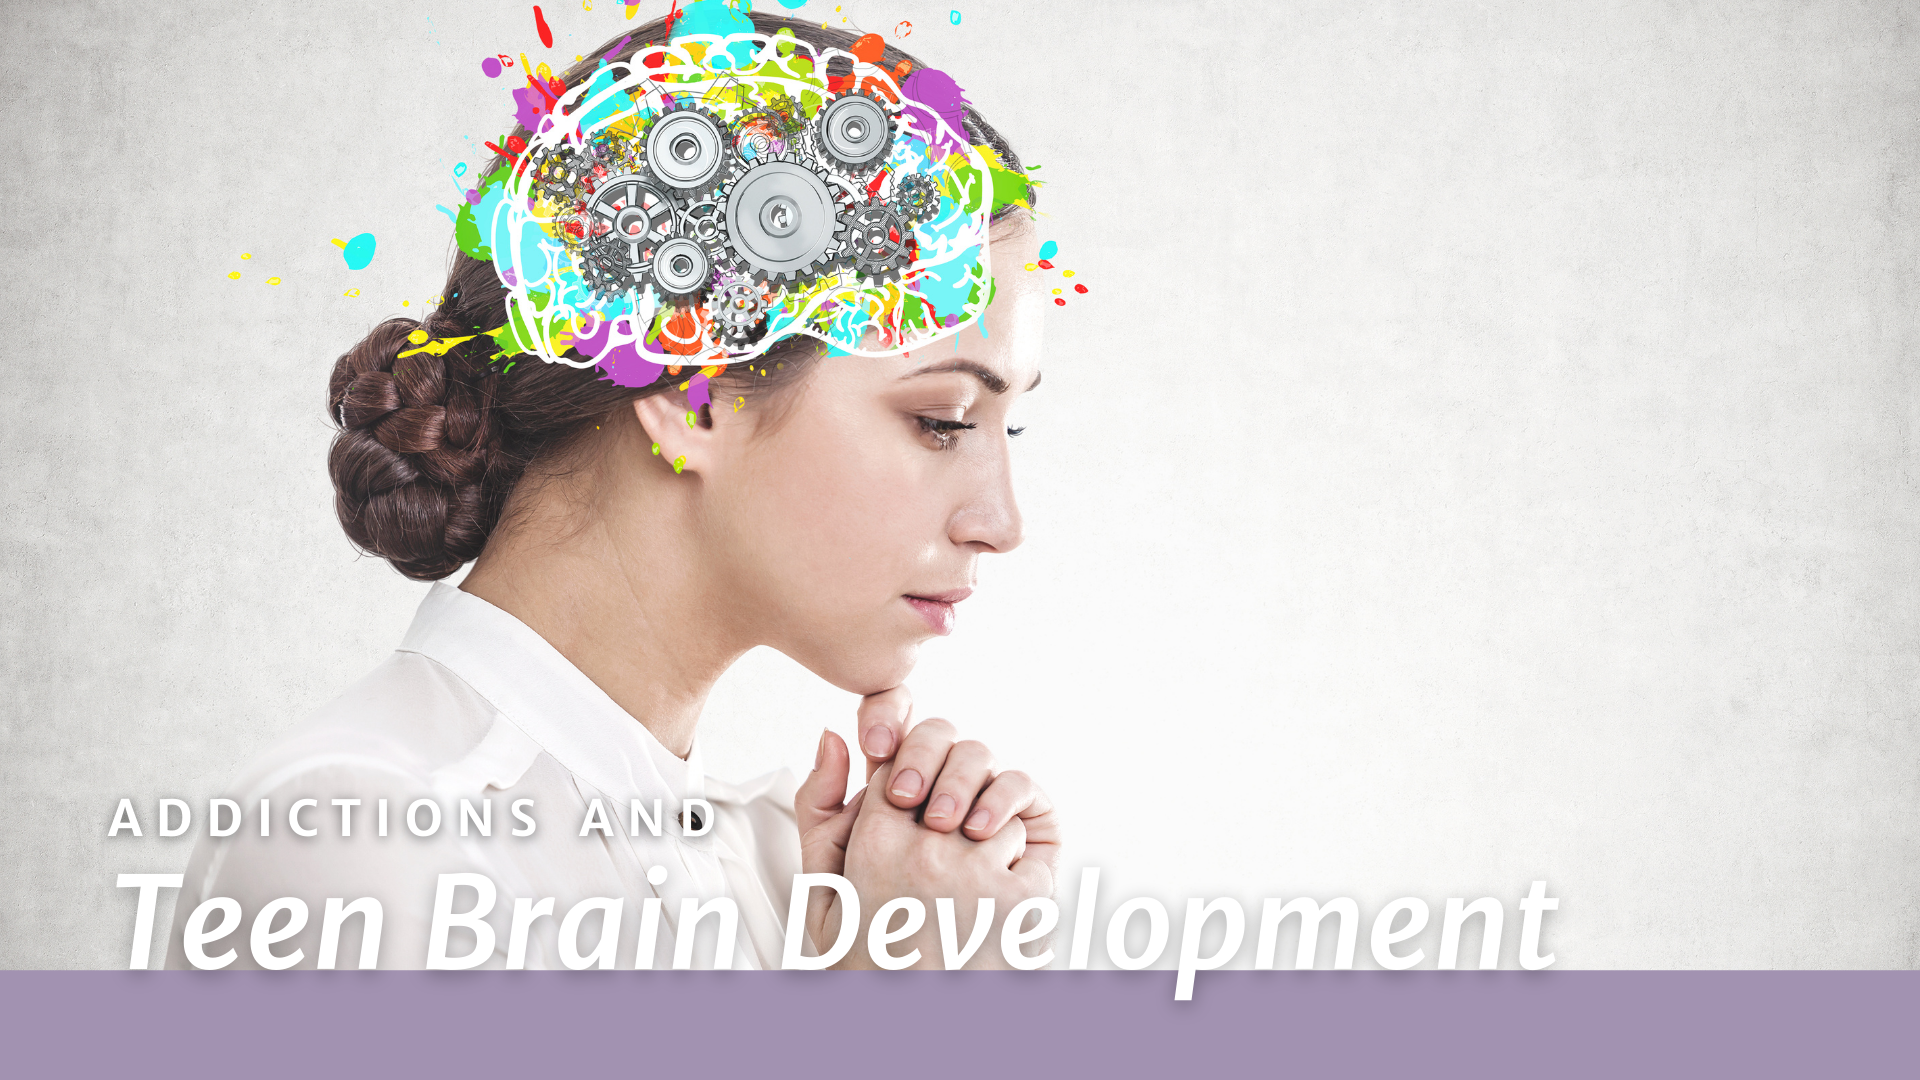 Brain Development, Teen Behavior and Preventing Drug Use